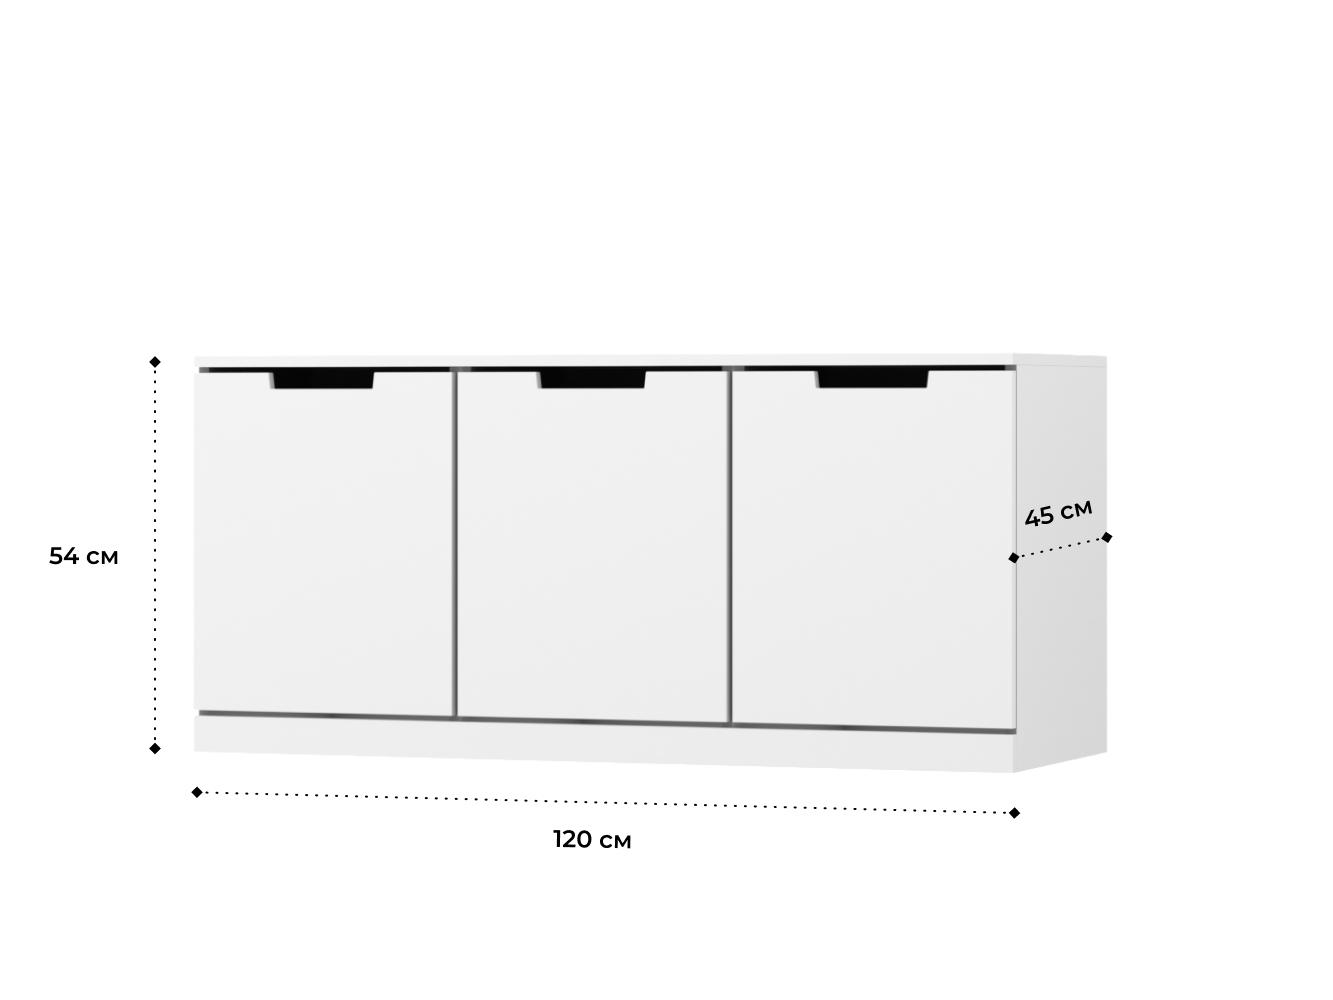  Комод Нордли 45 white ИКЕА (IKEA) изображение товара